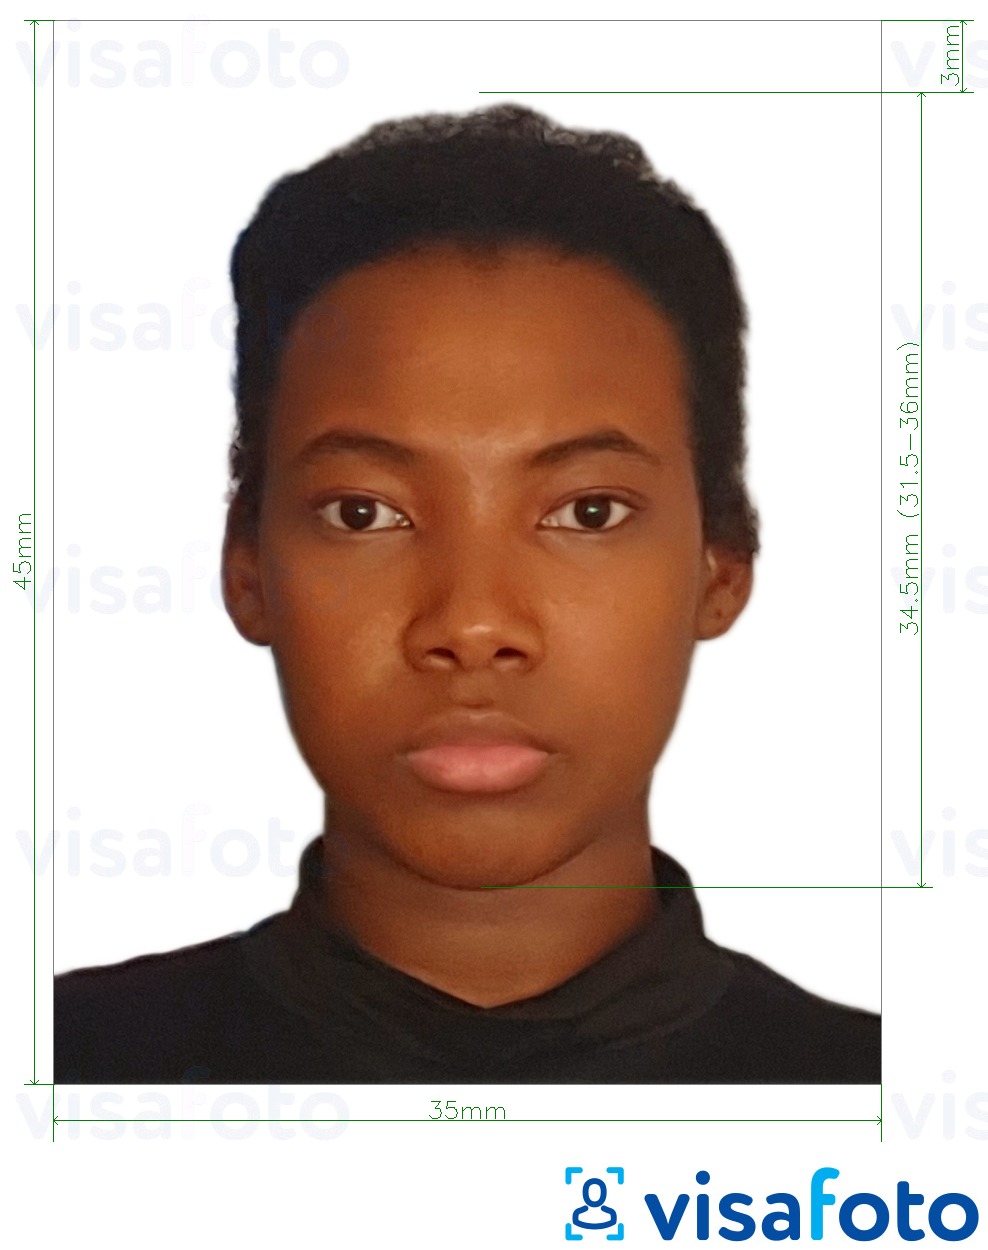 Primjer fotografije za Namibijska viza iz Europe 35x45mm (3.5x4.5 cm) s točno određenom veličinom